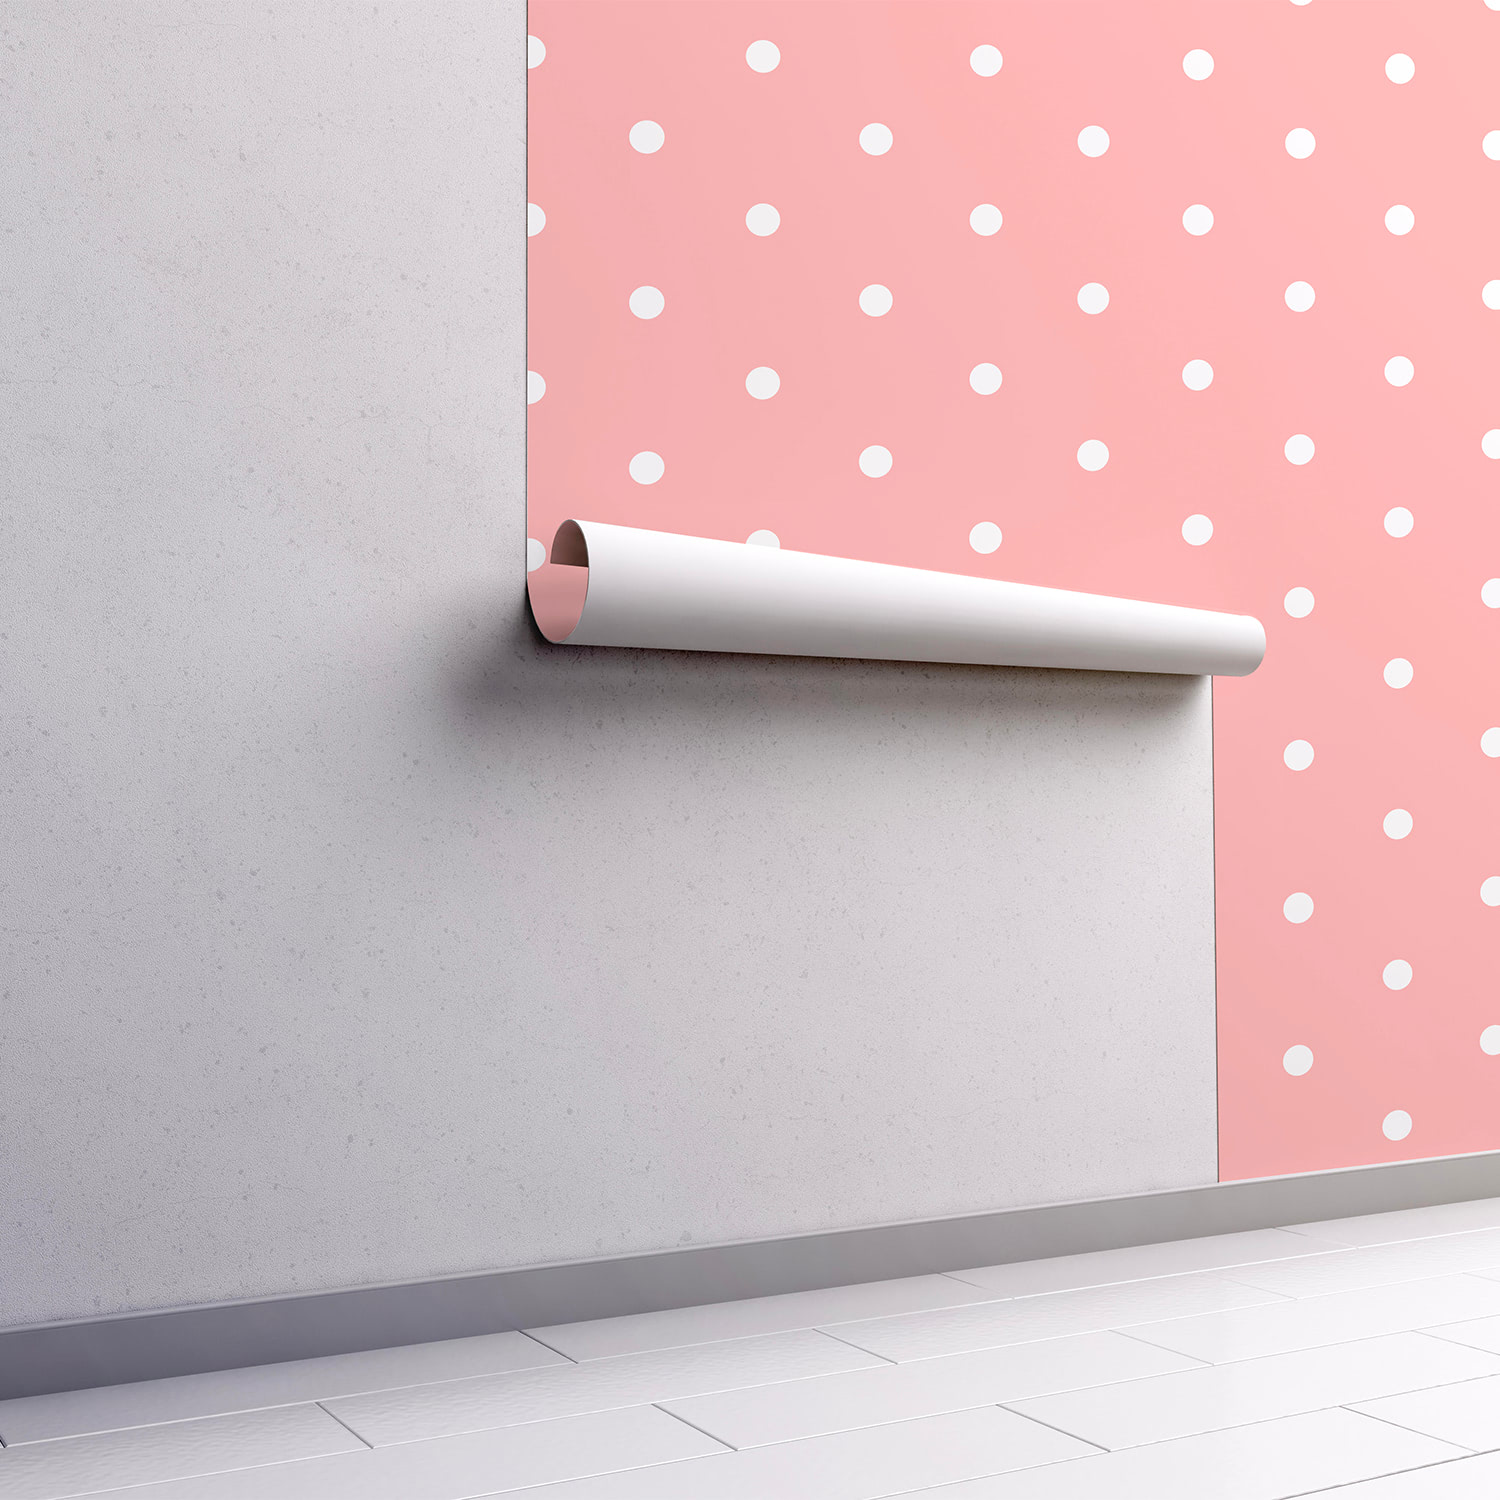 PP60-mur.rouleau-papier-peint-adhesif-decoratif-revetement-vinyle-motifs-mini-pois blanc:rose-renovation-meuble-mur-mini